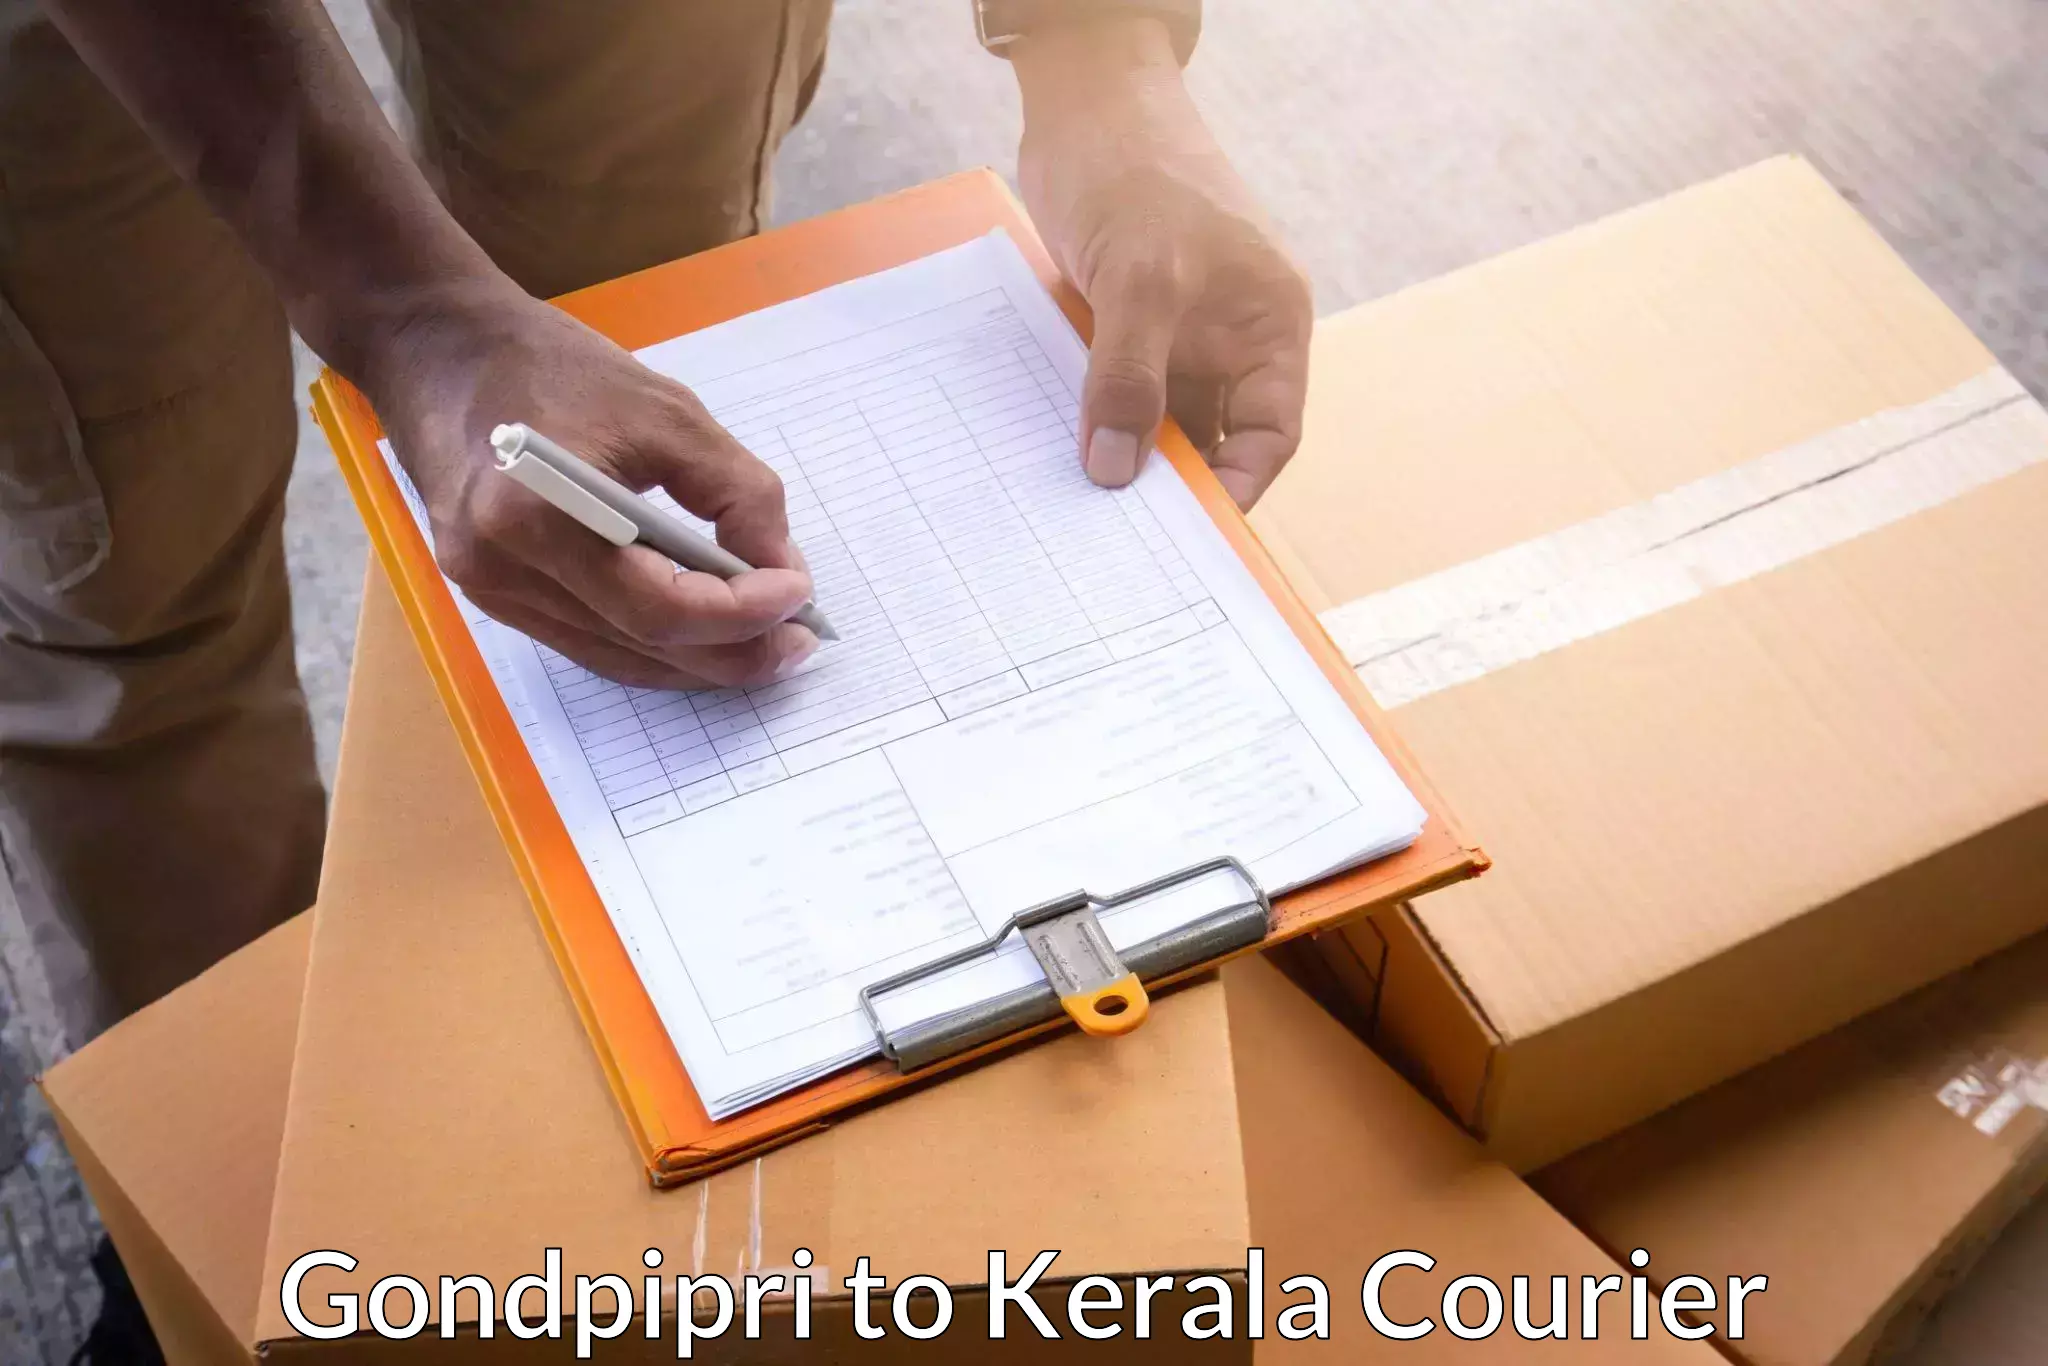 High-priority parcel service Gondpipri to Cochin